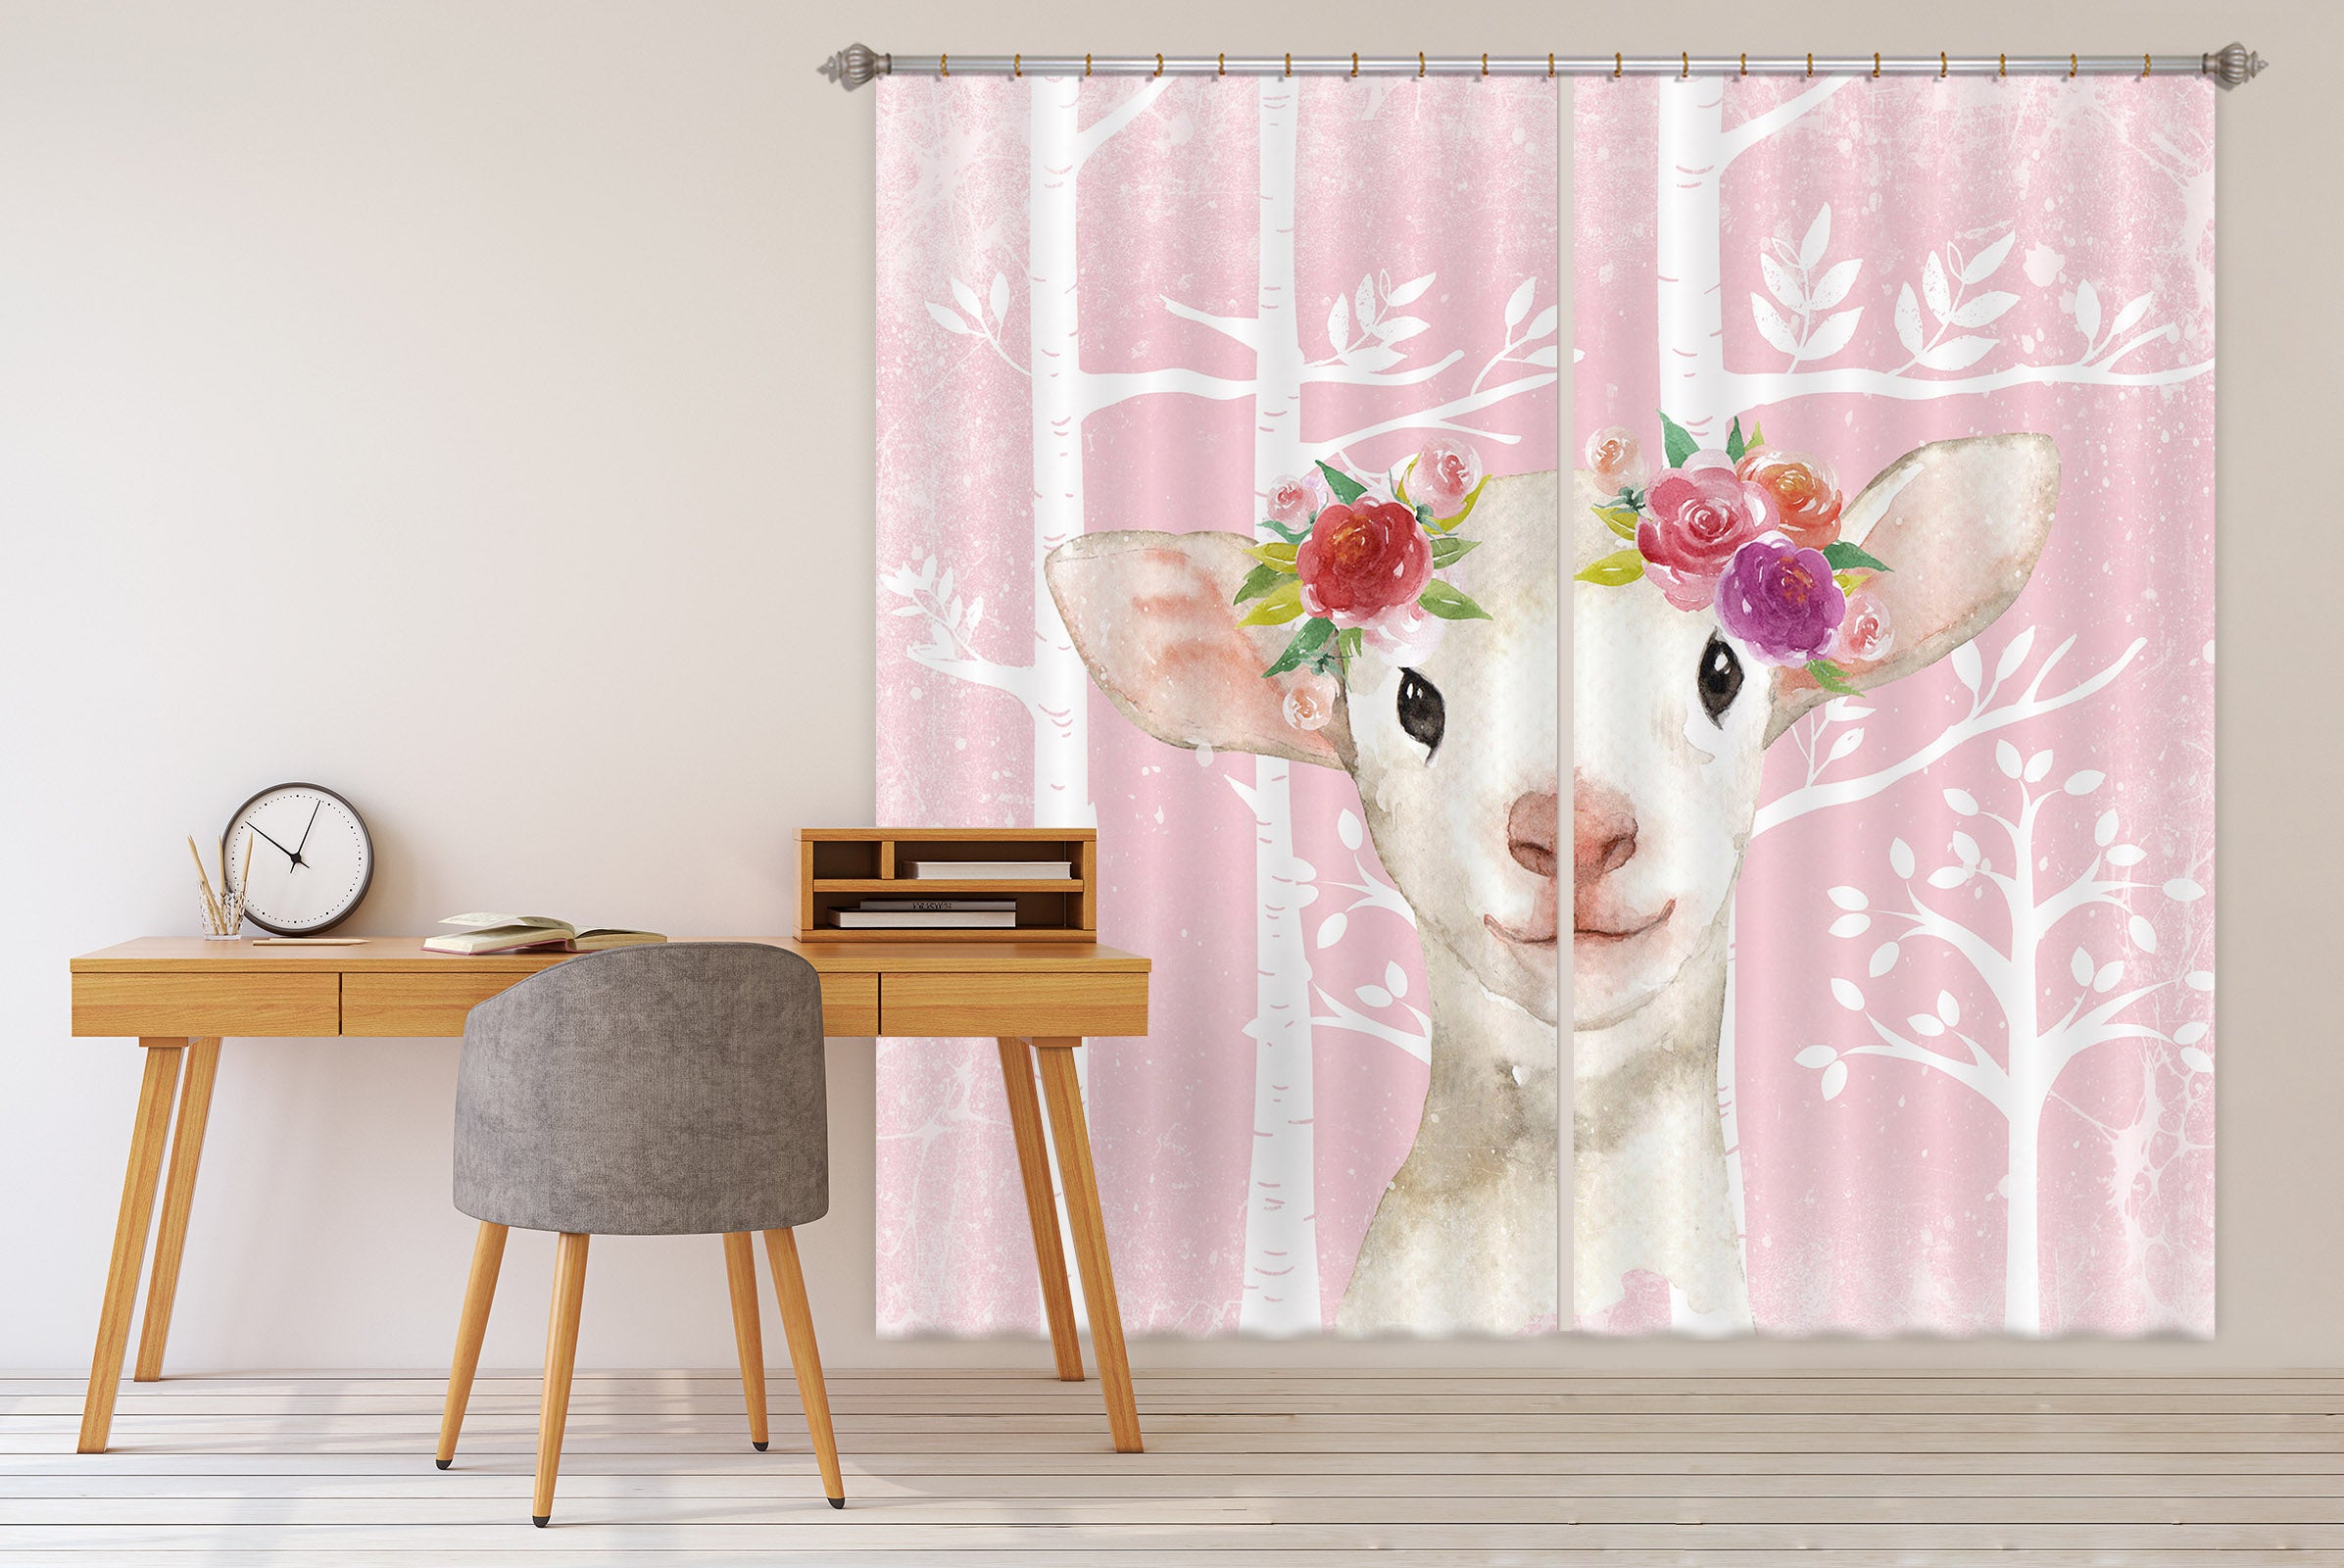 3D Sheep Flower 177 Uta Naumann Curtain Curtains Drapes